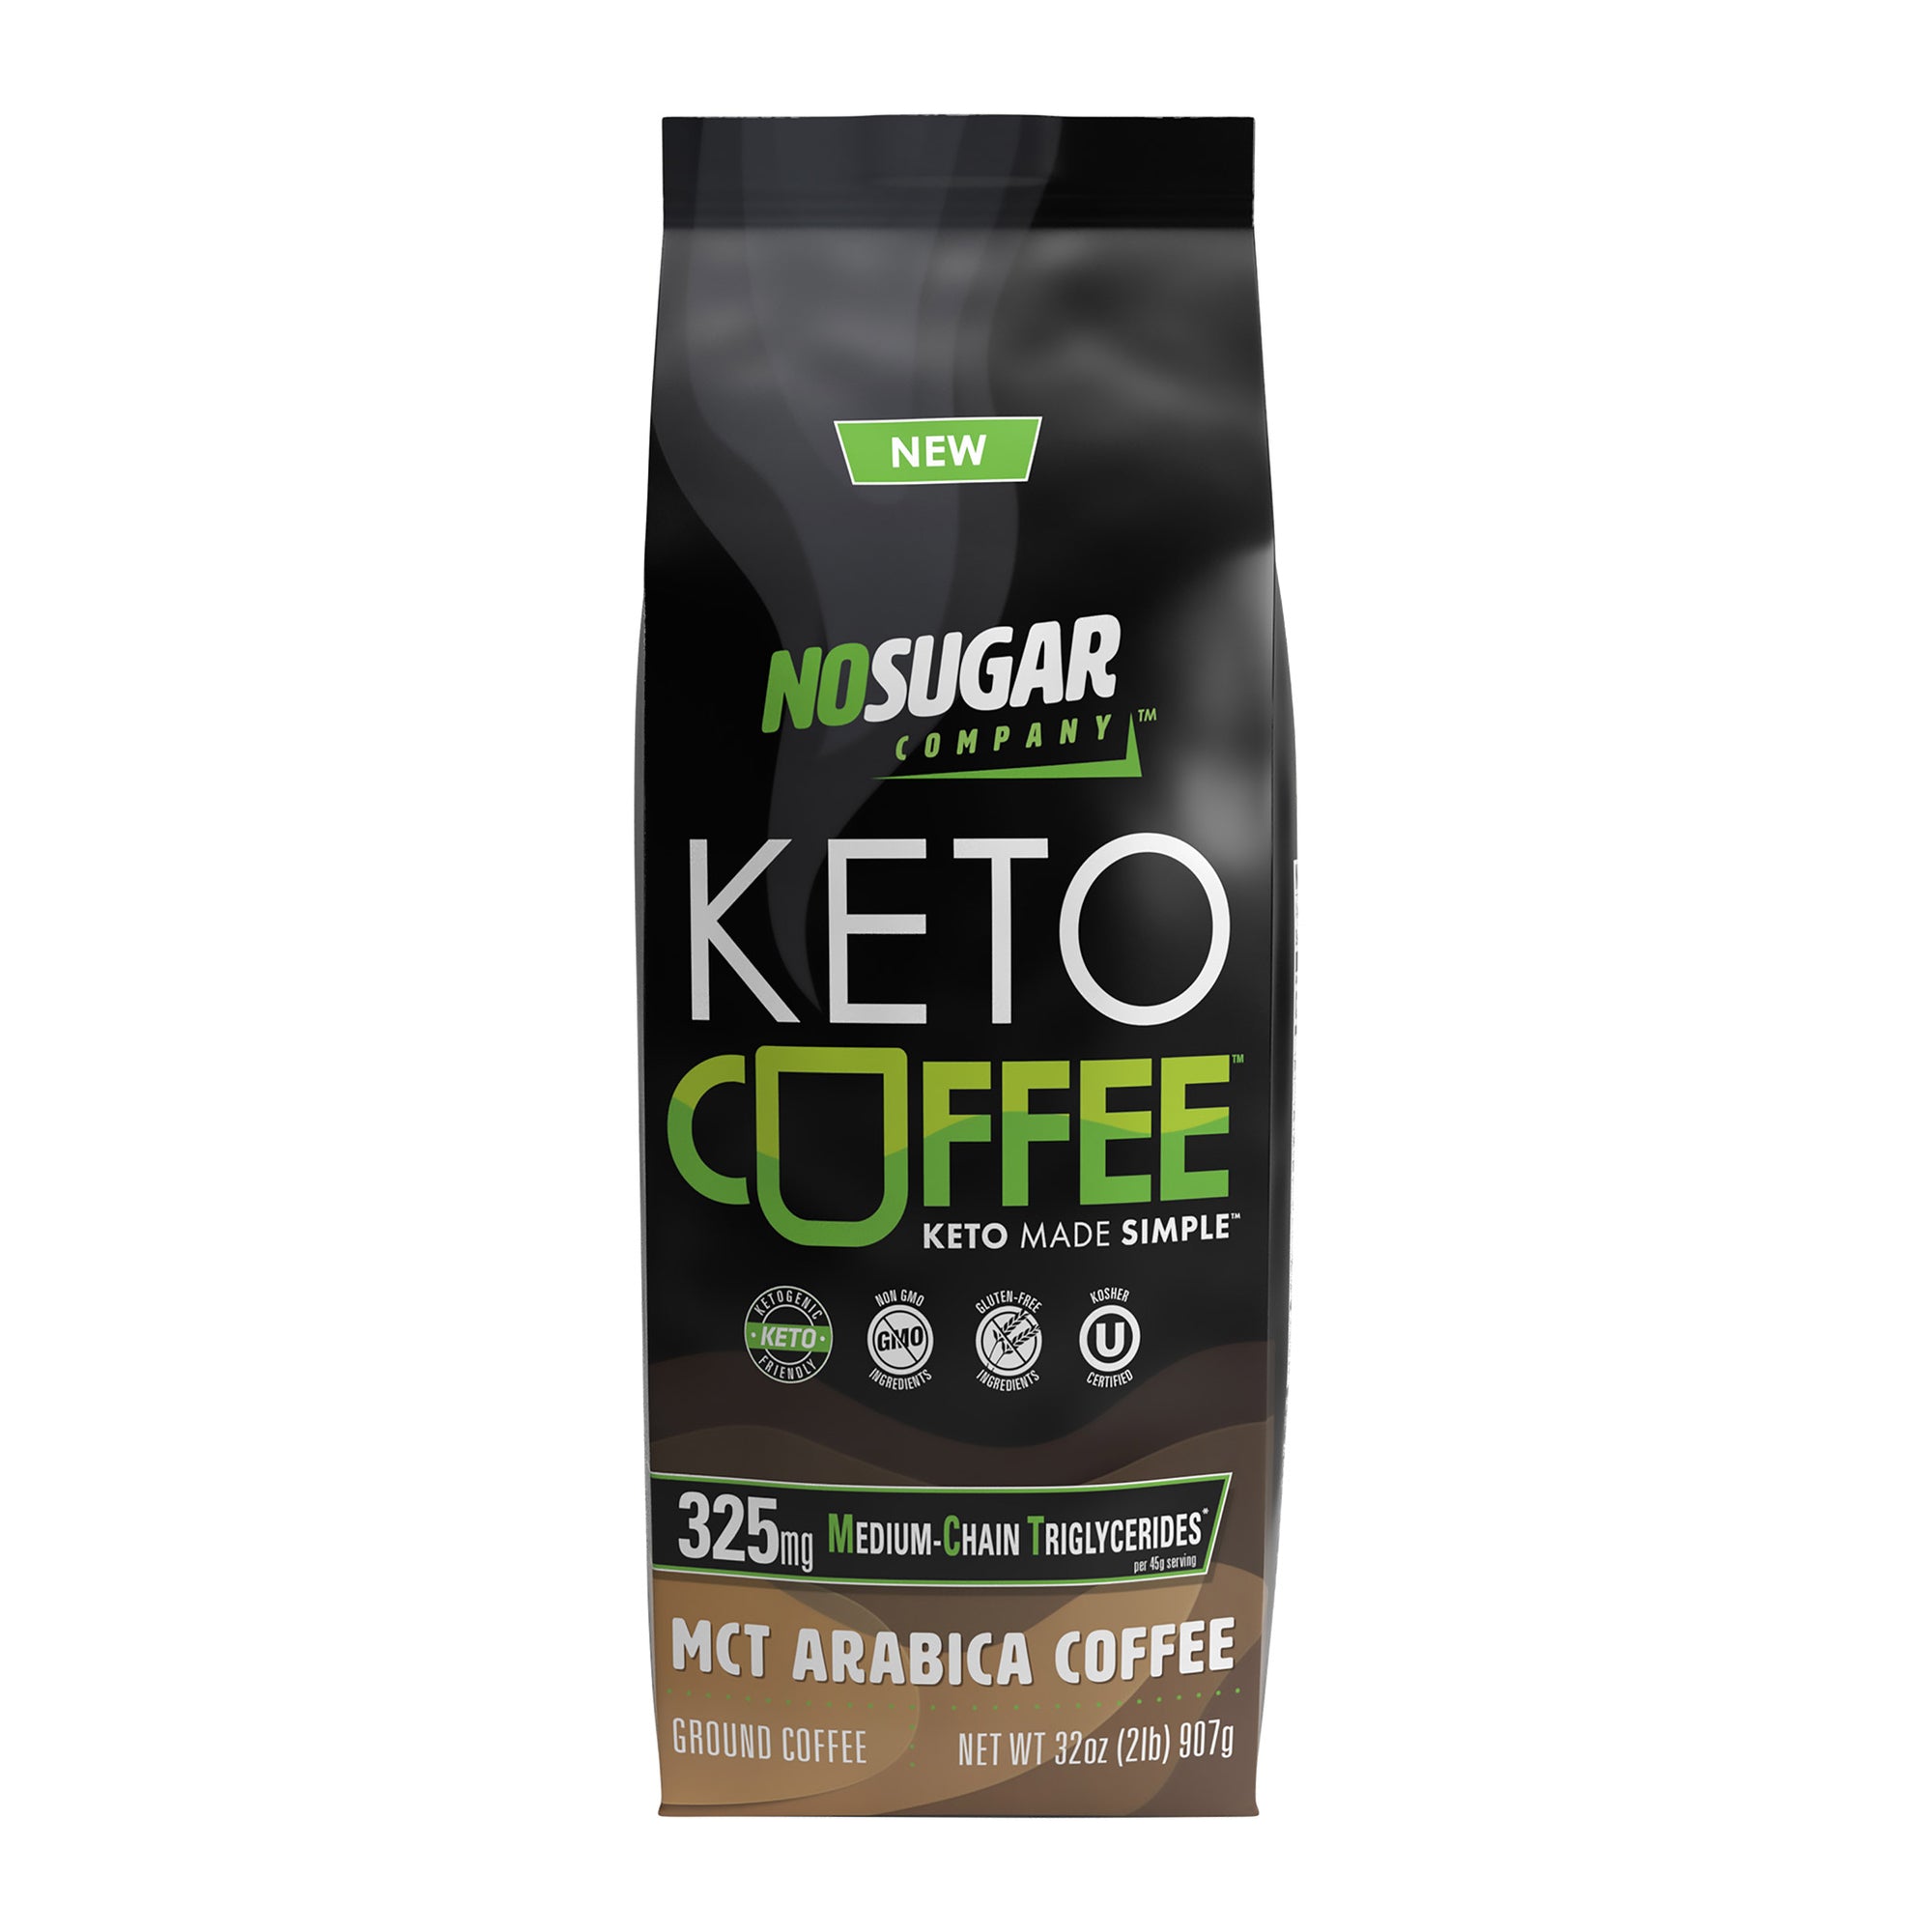 No Sugar Keto Coffee 2lbs